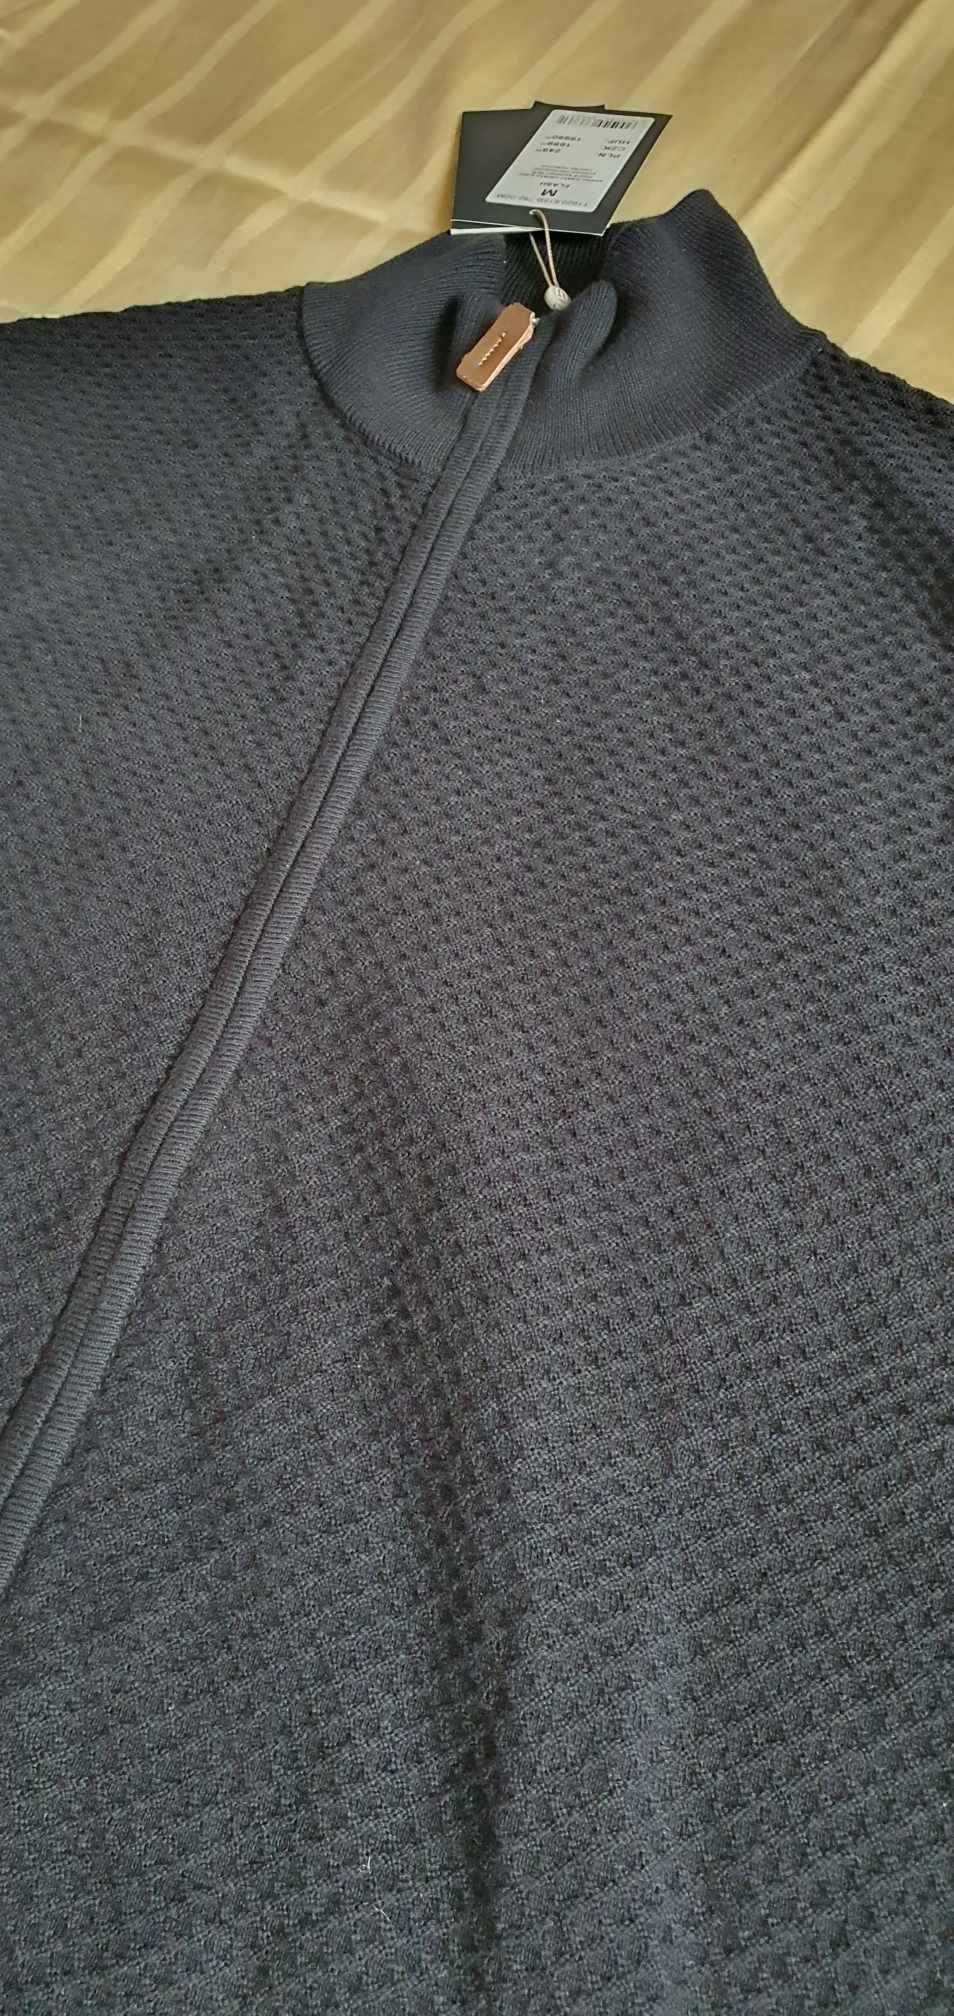 Sweter Męski Tatuum, rozmiar M, 100 % bawełna, Nowy z Metką